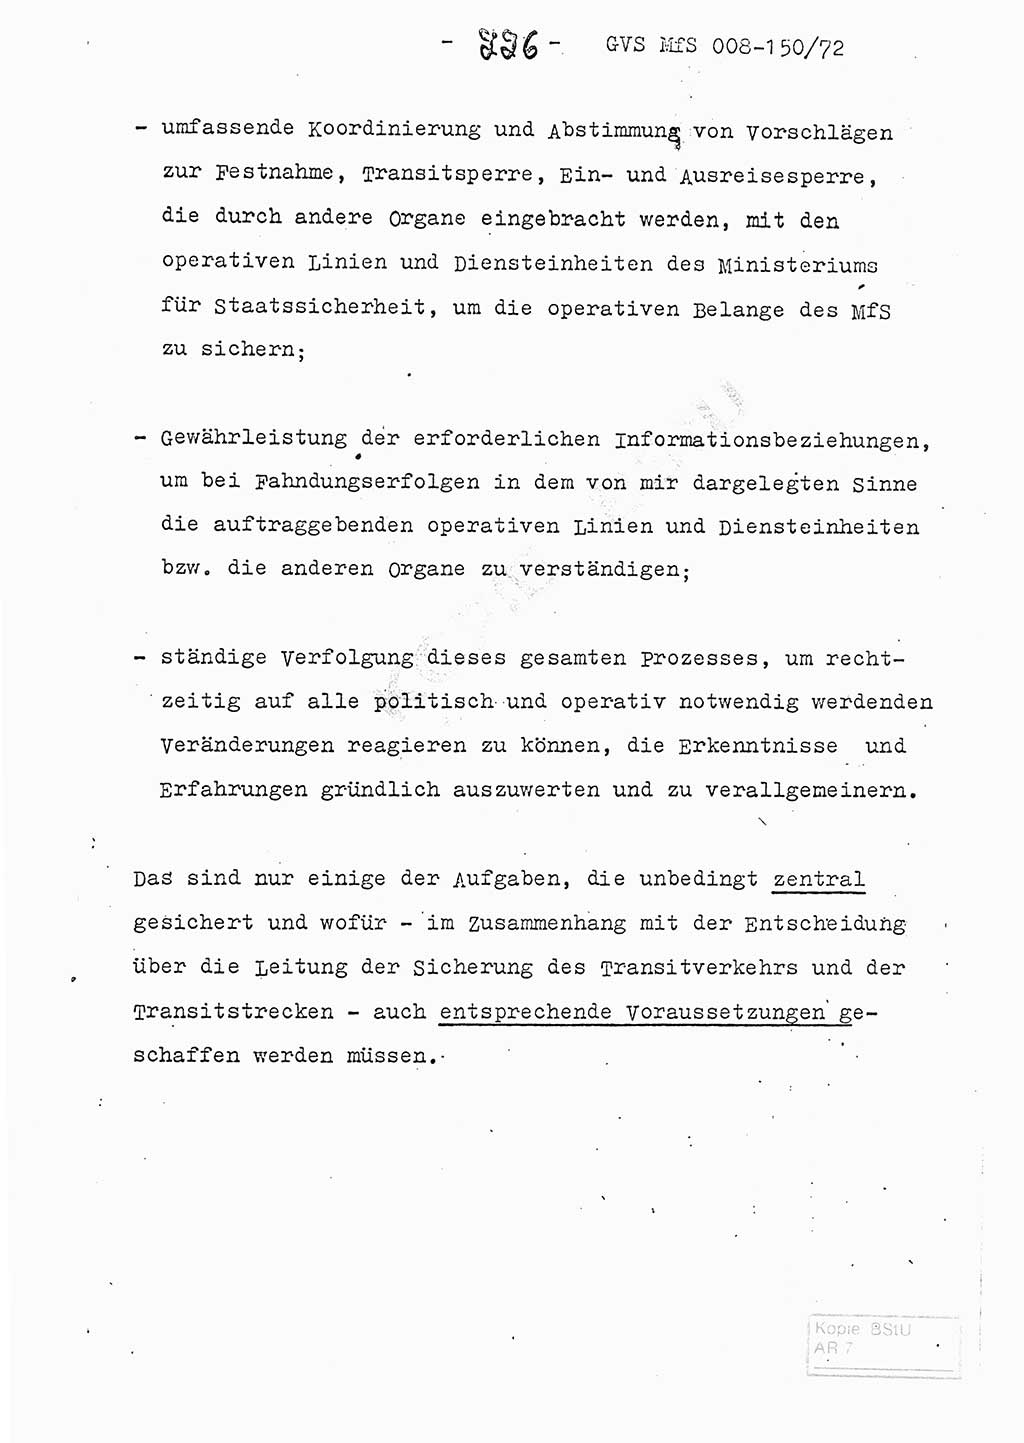 Referat (Entwurf) des Genossen Minister (Generaloberst Erich Mielke) auf der Dienstkonferenz 1972, Ministerium für Staatssicherheit (MfS) [Deutsche Demokratische Republik (DDR)], Der Minister, Geheime Verschlußsache (GVS) 008-150/72, Berlin 25.2.1972, Seite 226 (Ref. Entw. DK MfS DDR Min. GVS 008-150/72 1972, S. 226)